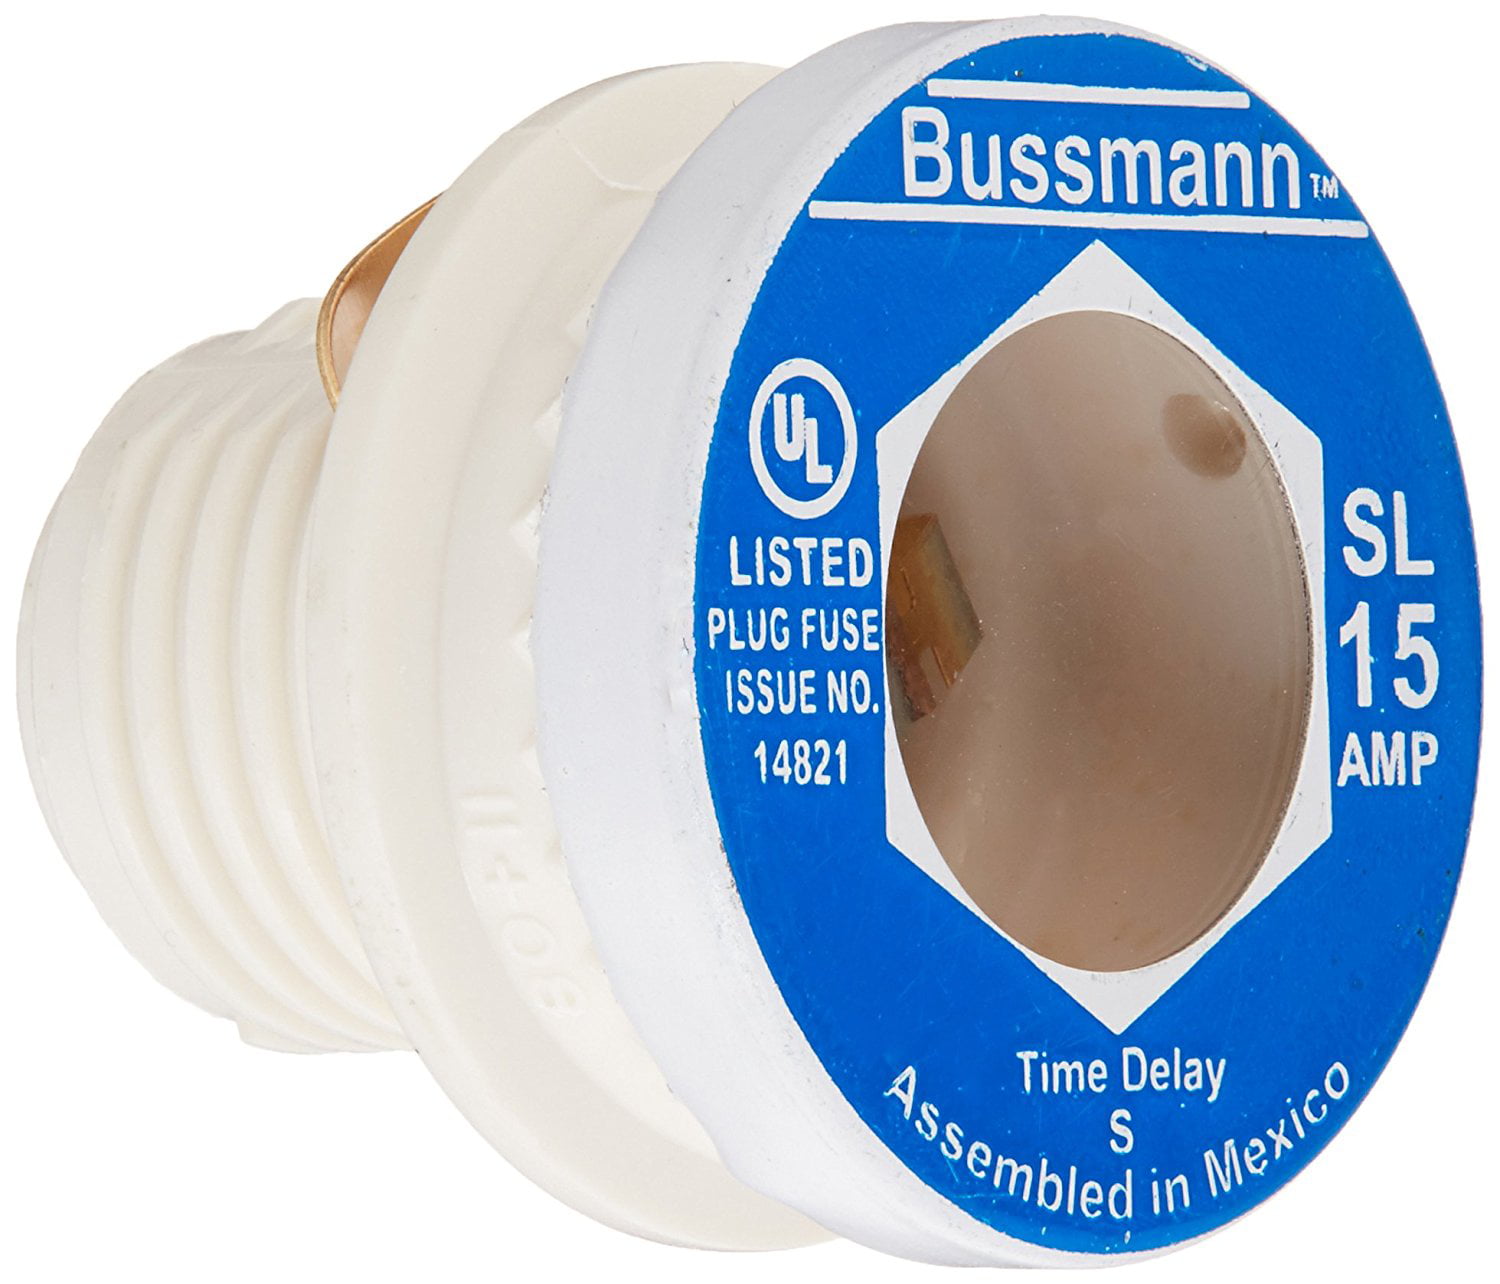 Bussmann Tamper Proof Plug Fuse Dual Element Type S 12 Amp 125 V Industrial Strength CD 1 for sale online 